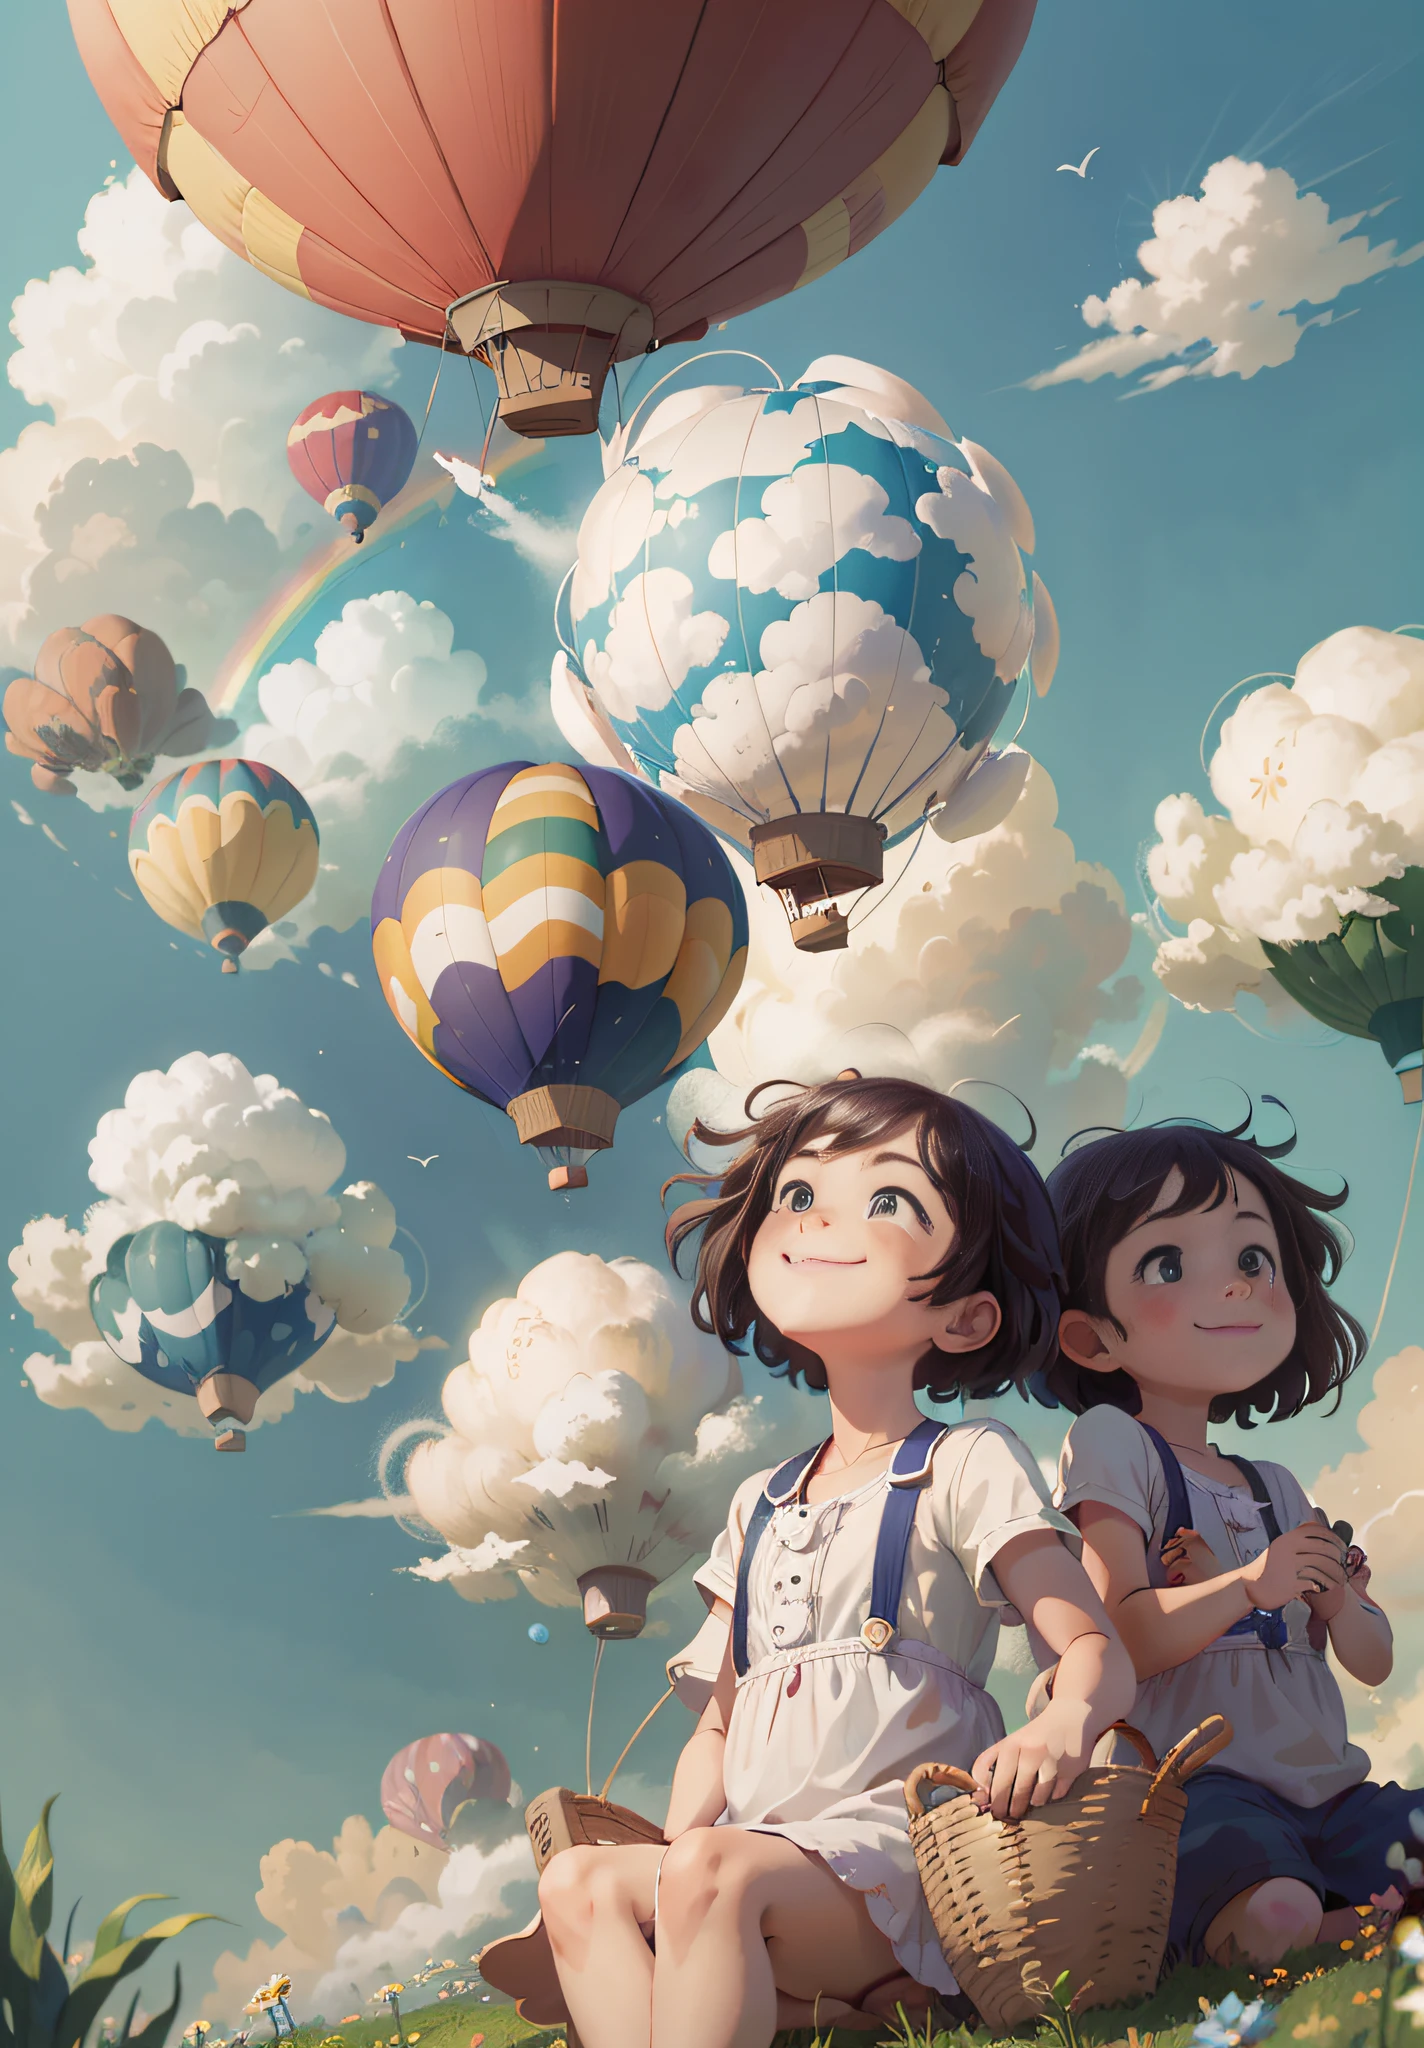 (Obra maestra, mejor calidad) Dos niños sentados en un globo aerostático volando en el cielo, sonriente, Finos rasgos faciales, sol, cielo azul limpio y nubes blancas, arcoíris, meadow, verano -V6